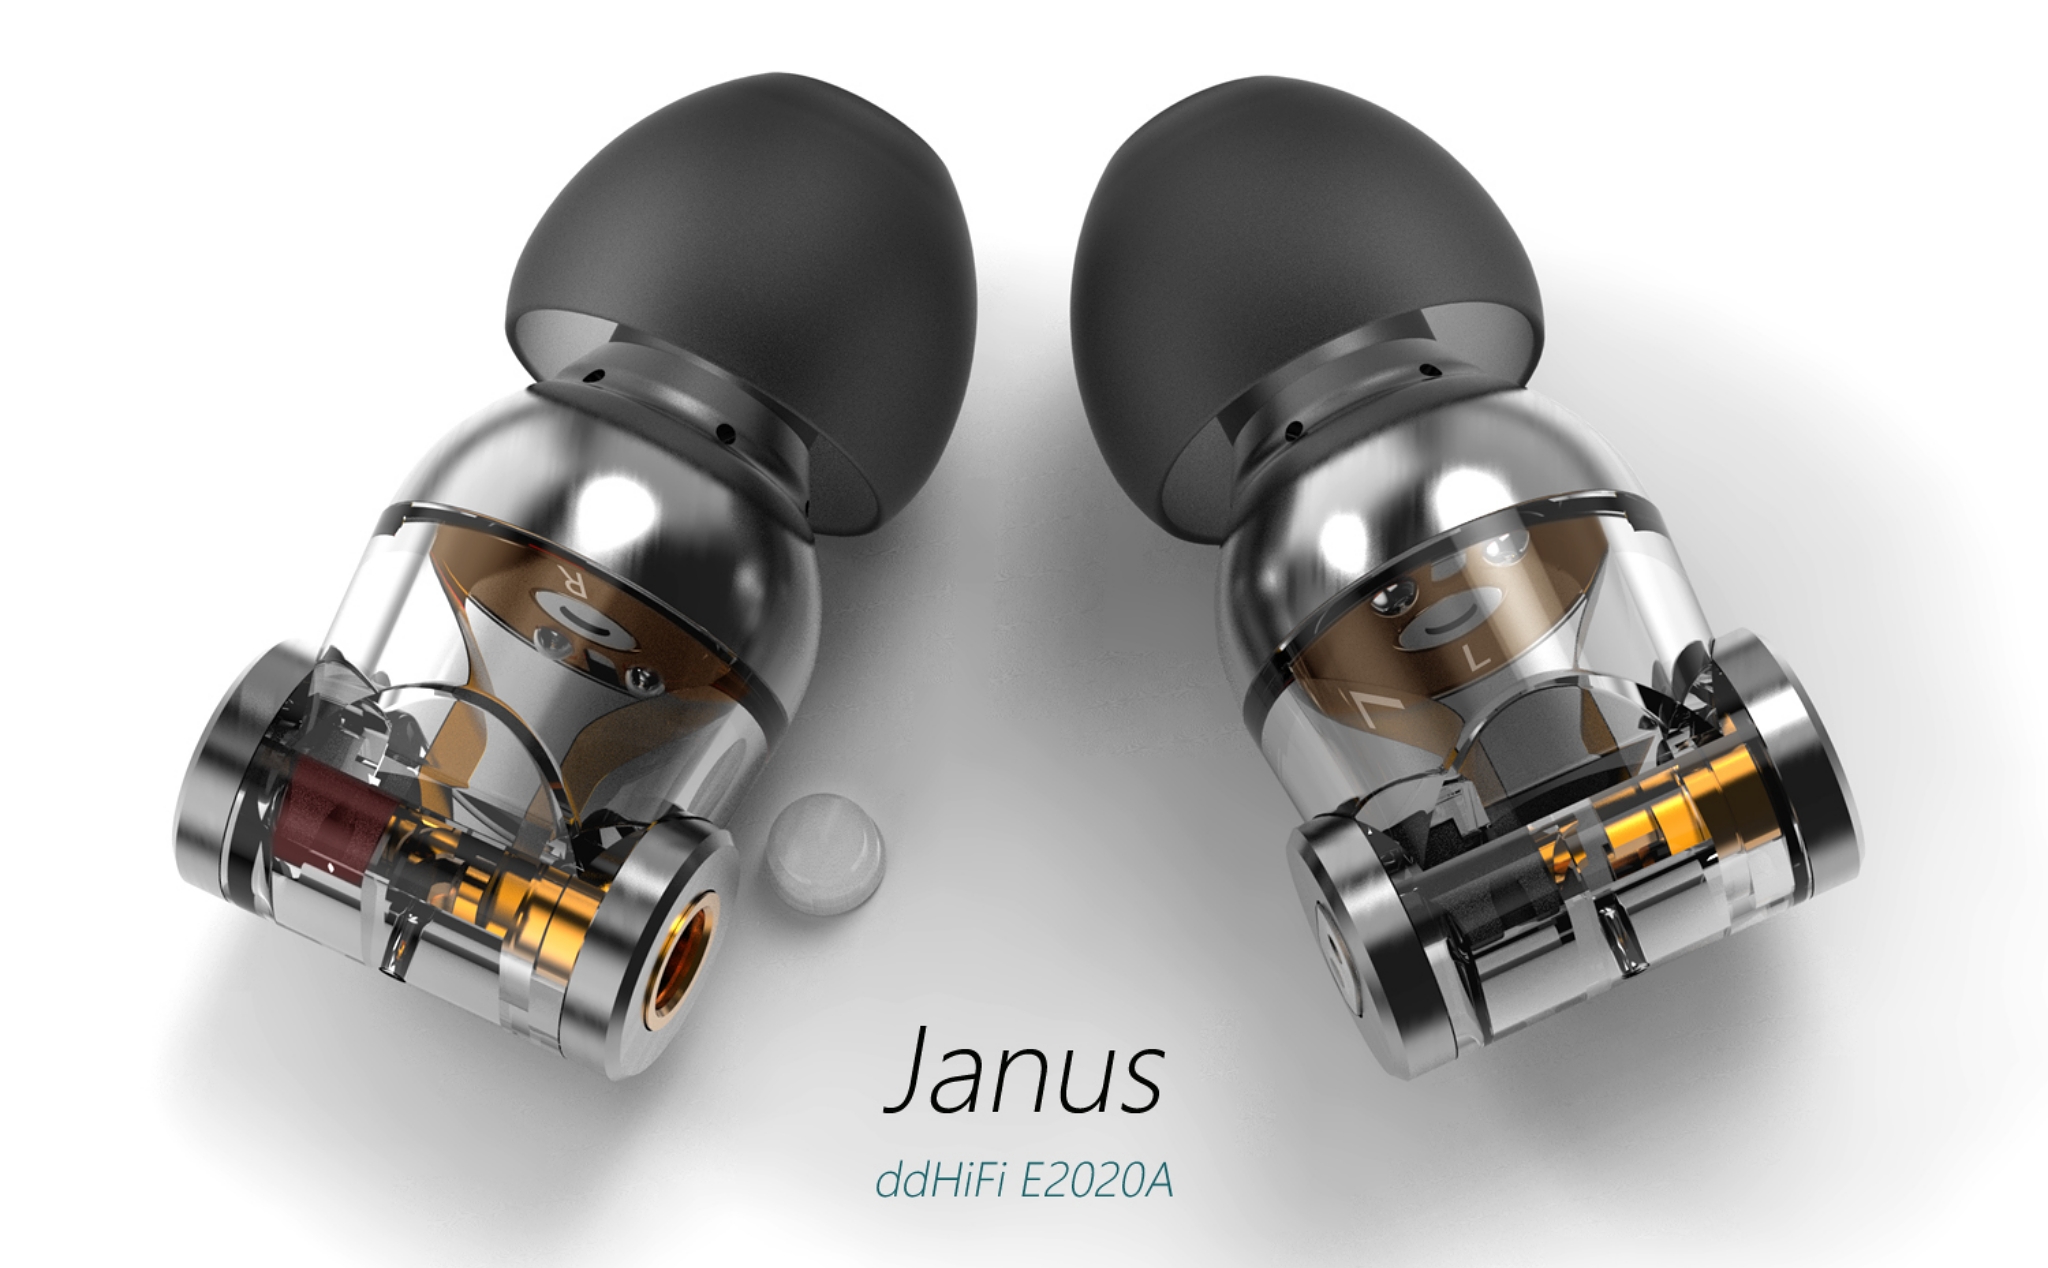 DDHiFi Janus: Mẫu in-ear đầu tiên sử dụng cả MMCX và 2-pin trên một housing, giá hơn 4tr5